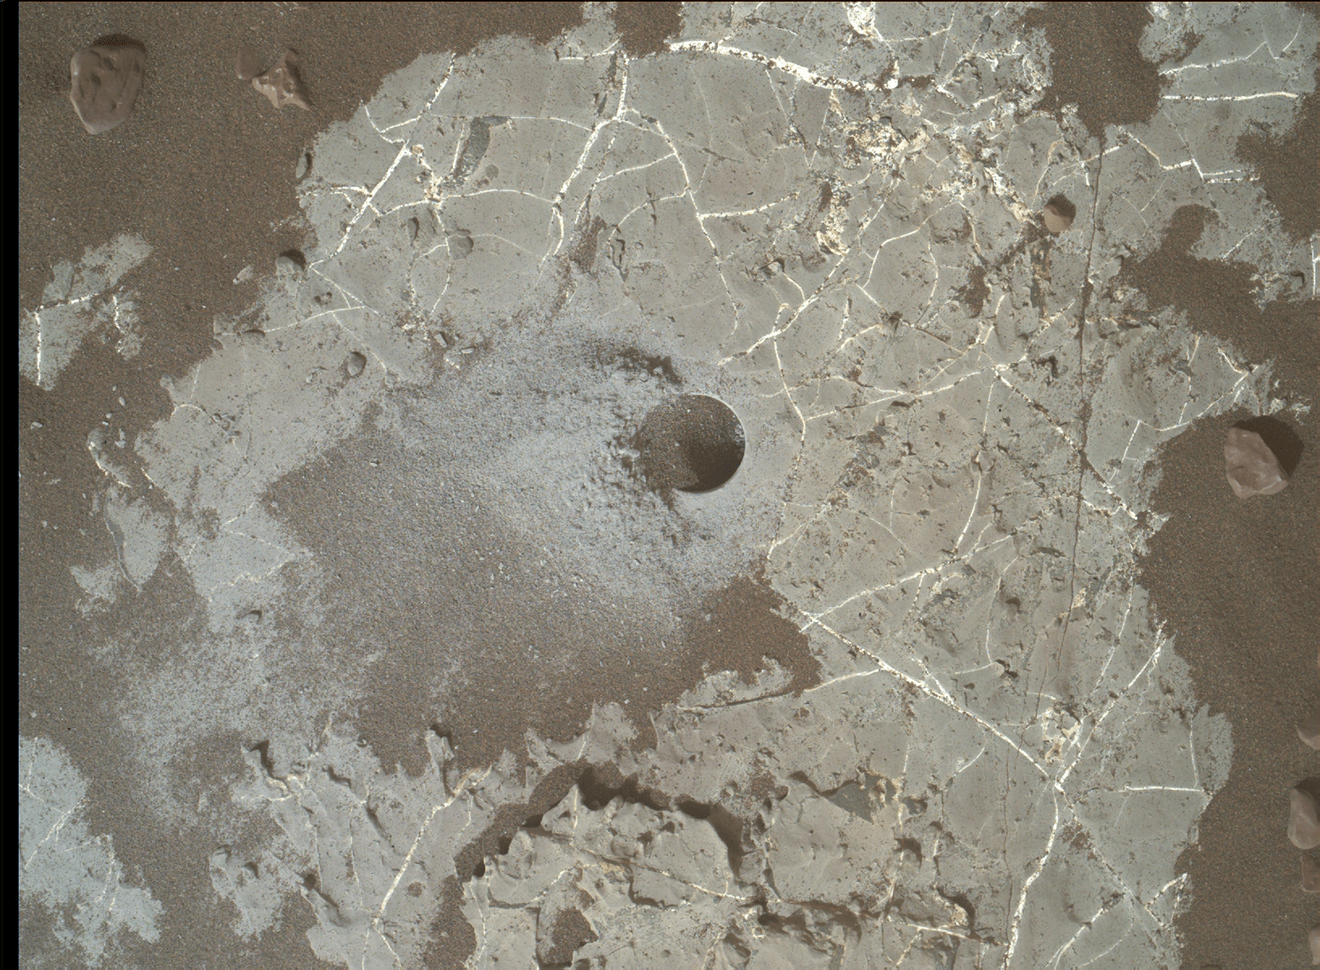 Un foro creato da Curiosity in una zona chiamata Vera Rubin Ridge all'interno del cratere Gale. Credits: NASA/JPL-Caltech/MSSS